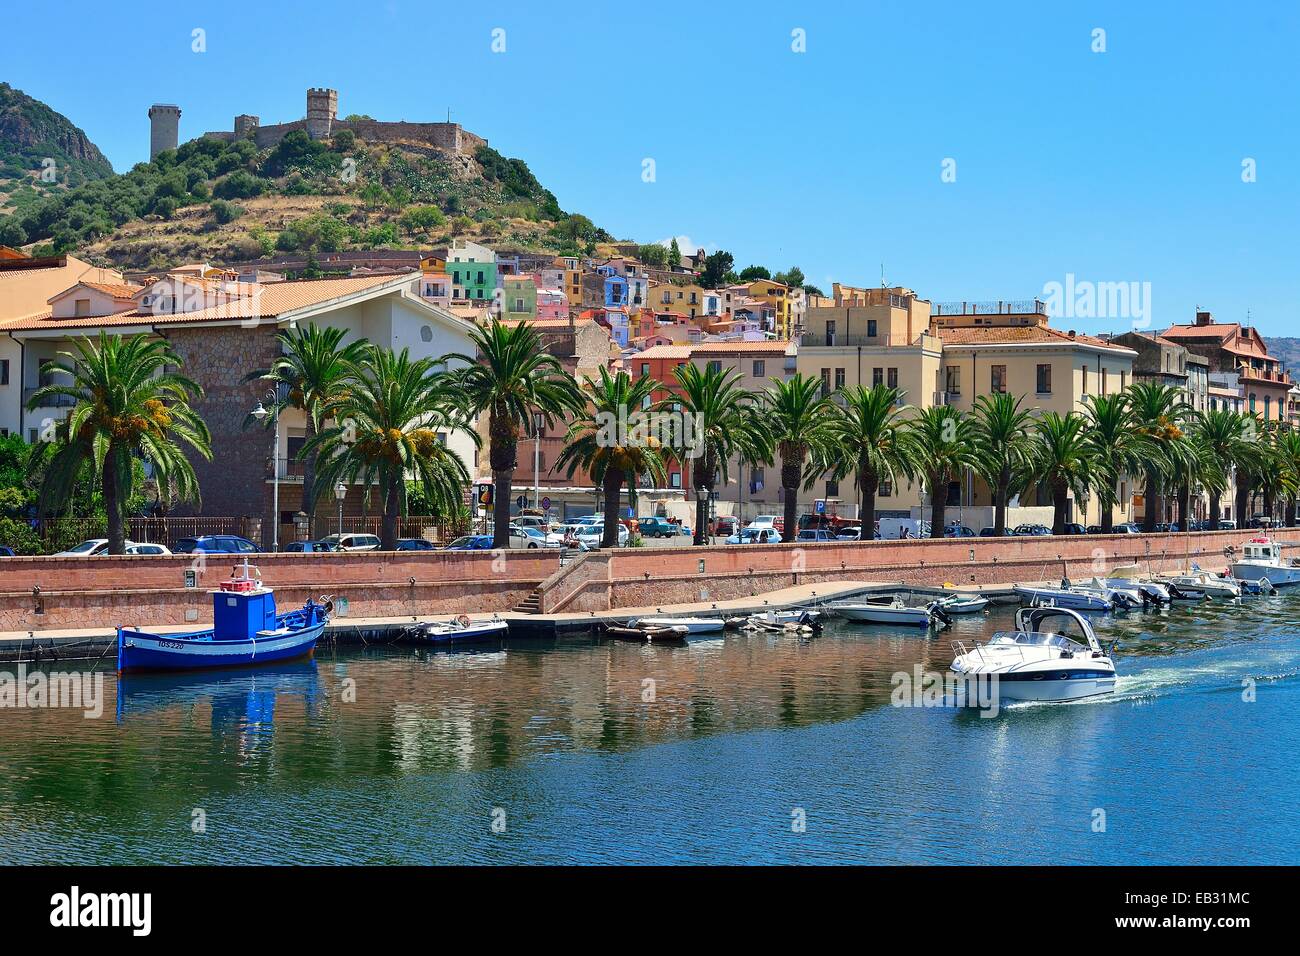 Blick vom Fluss Temo auf die Altstadt und die Burgruine Malaspina, Bosa, Provinz Oristano, Sardinien, Italien Stockfoto